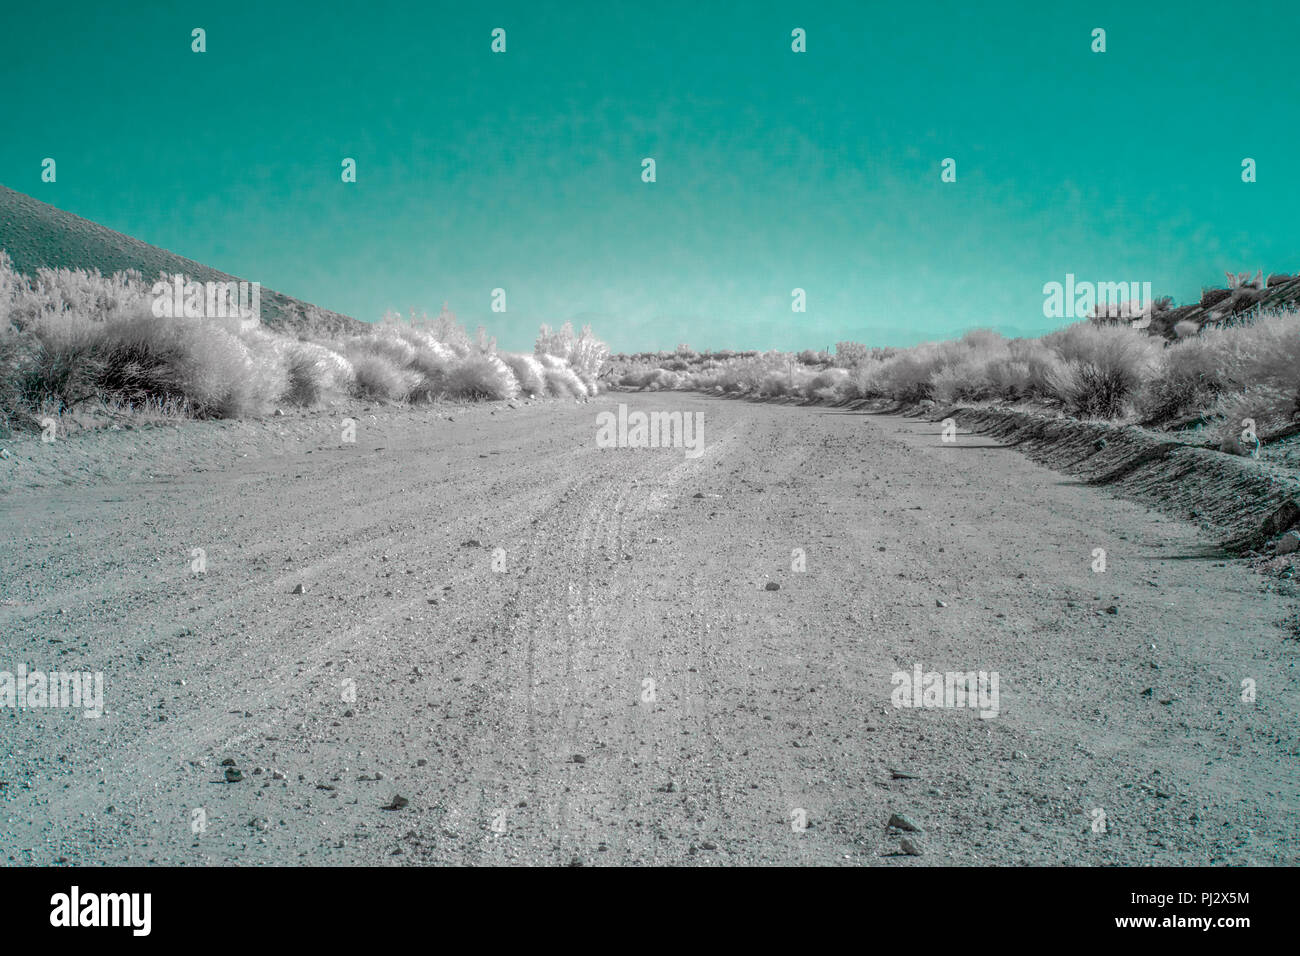 Una solitaria lungo strade sterrate corre nel deserto sotto una luce blu del cielo. Foto Stock